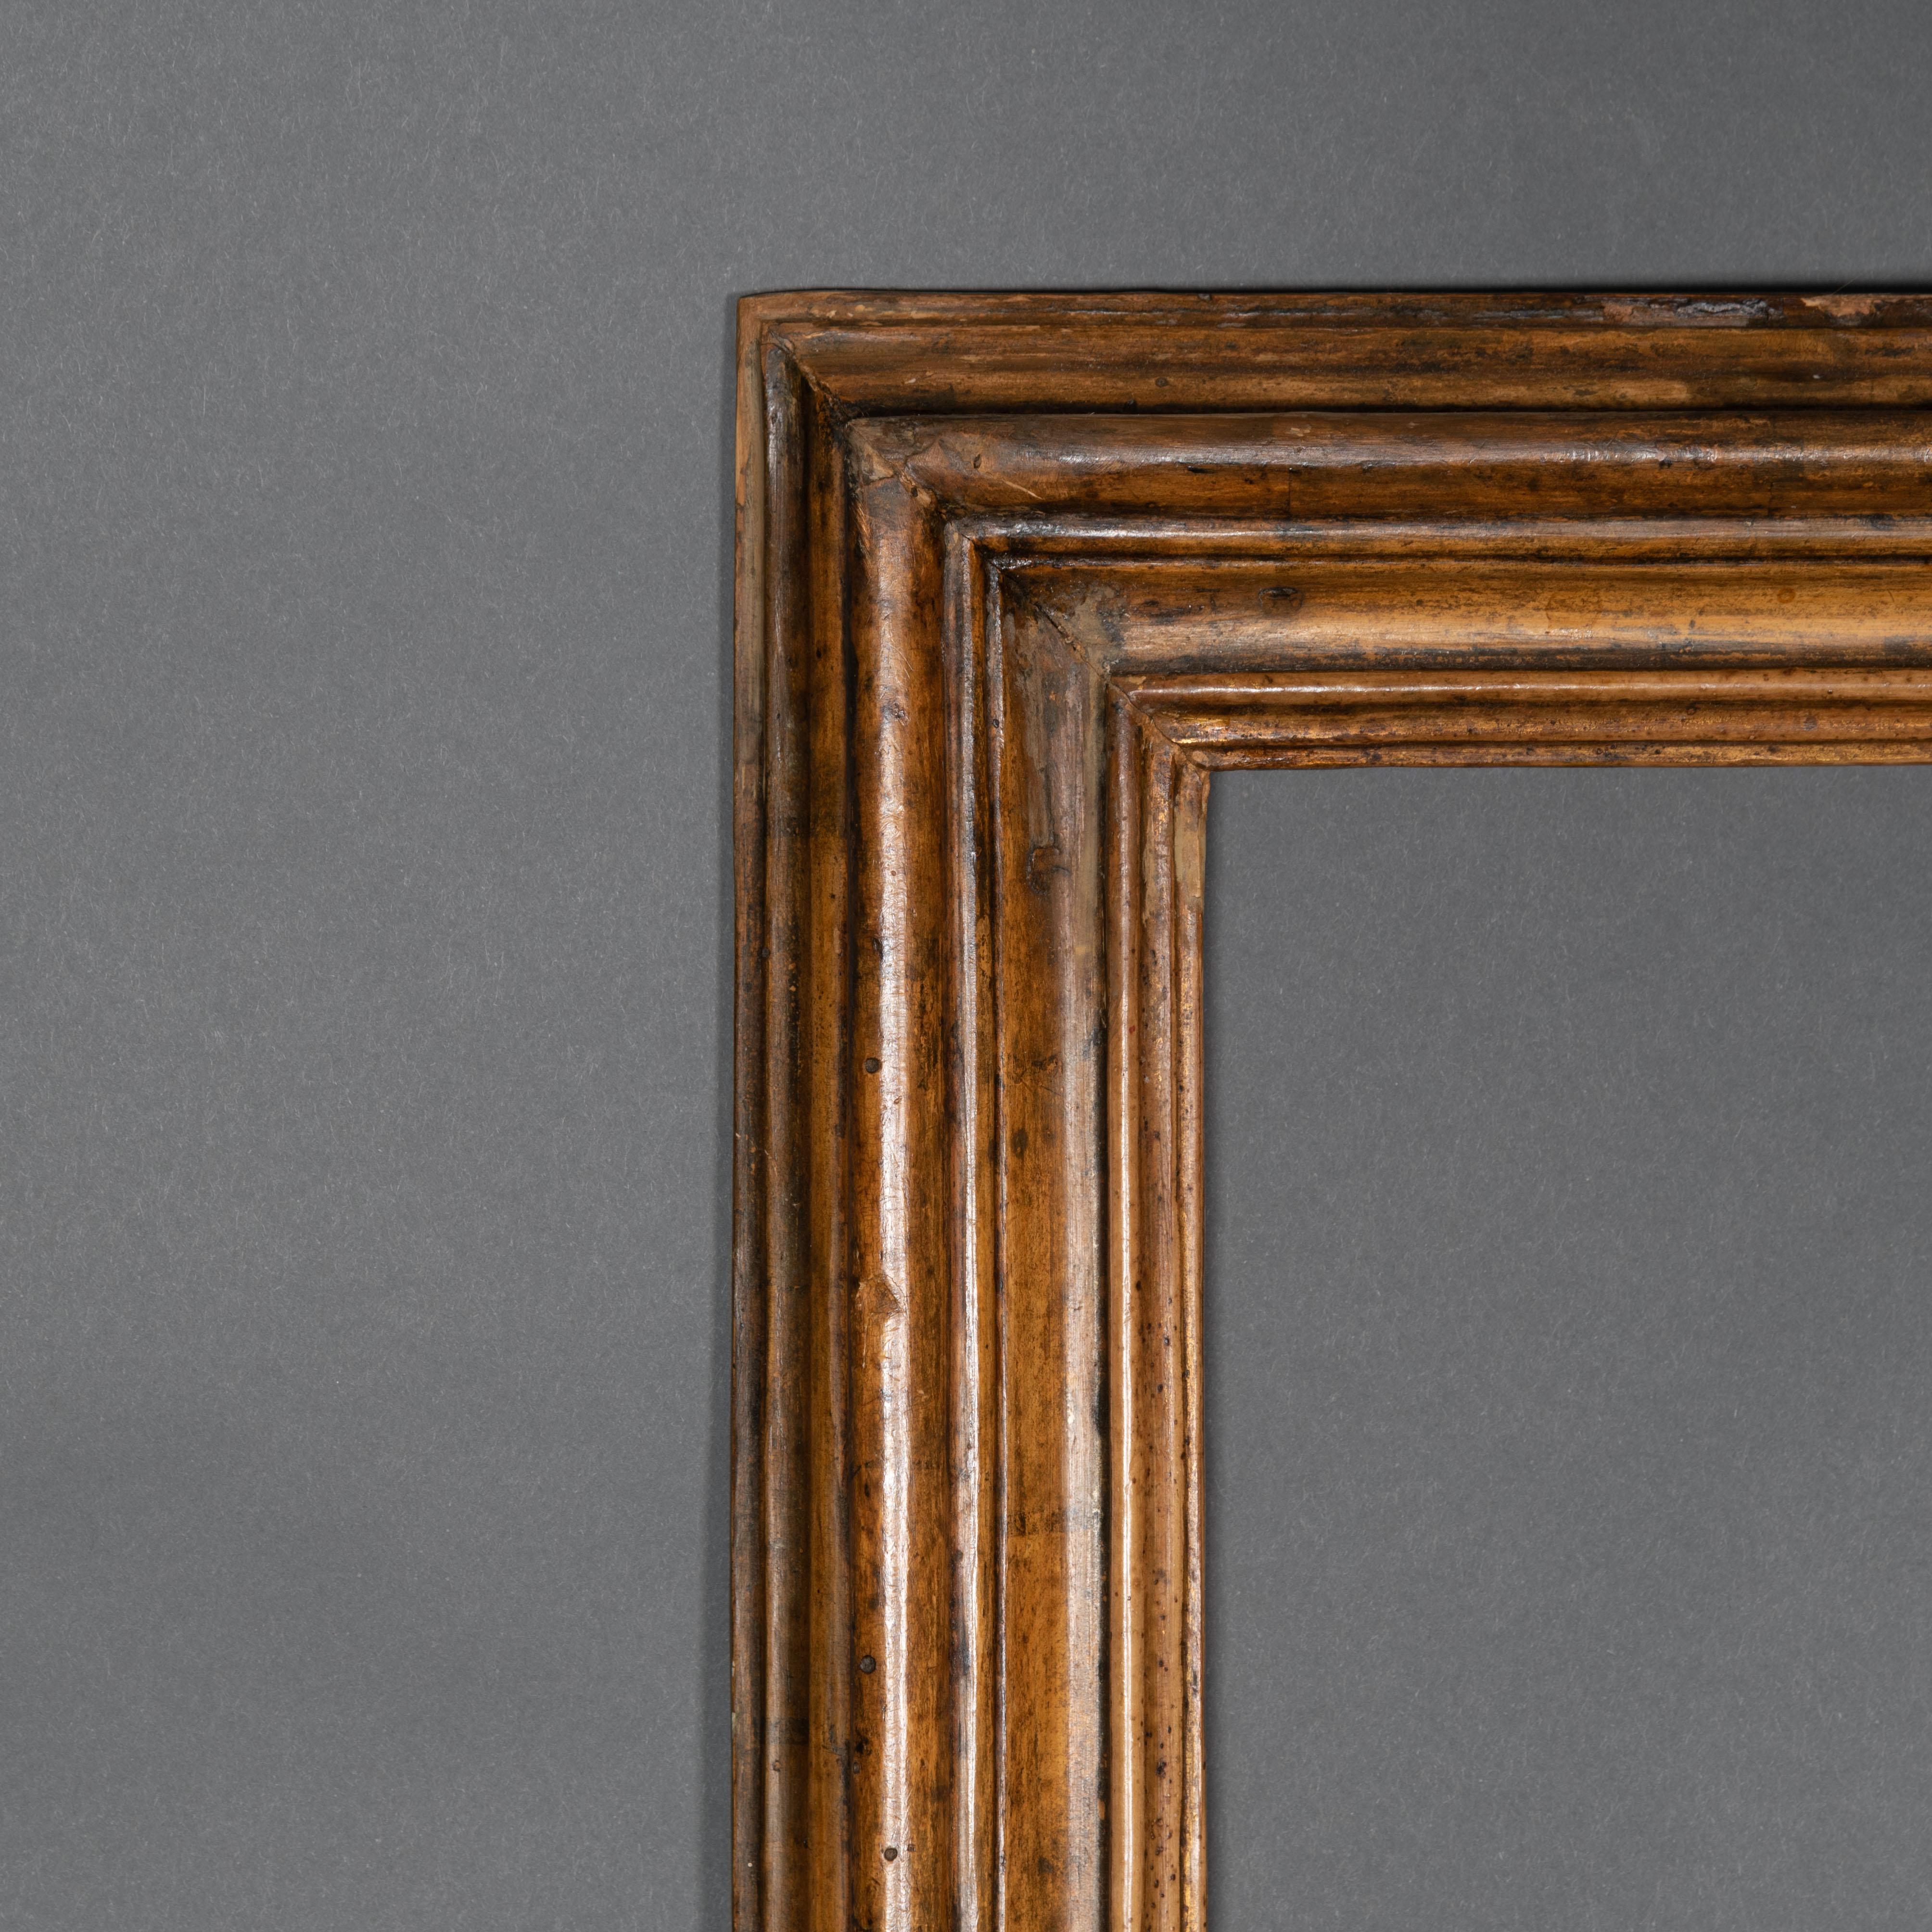 Salvator Rosa dernier cadre en bois doré du 17ème siècle.
Dimensions intérieures cm 32.x 40.8

Pur exemple de cadre italien en bois doré Salvator Rosa du 17ème siècle.
